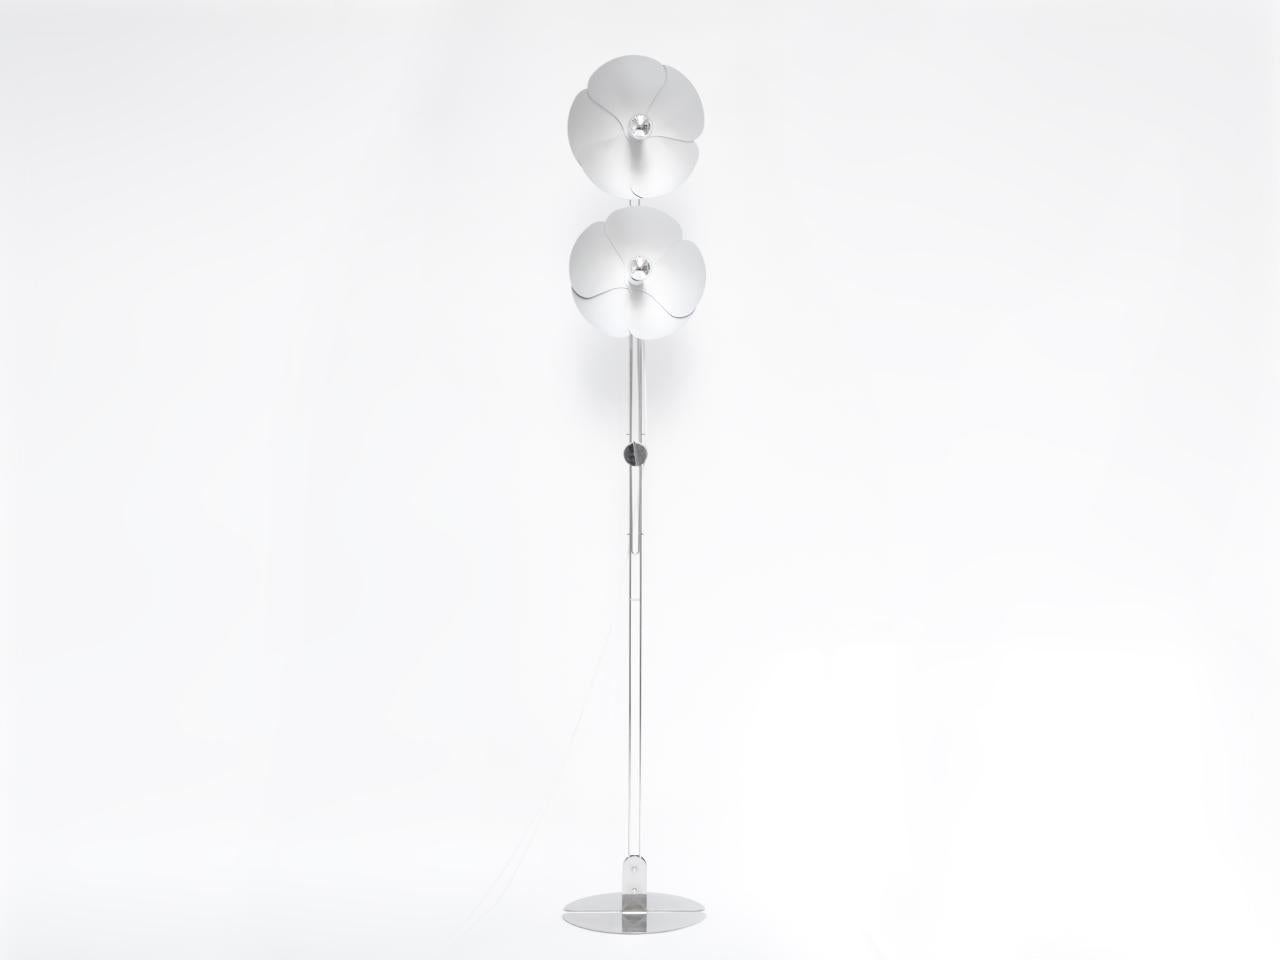 En 1967, Olivier Mourgue a inventé un dispositif d'éclairage en forme de fleur, composé de pétales d'aluminium fixés sur deux fils de métal chromé, pour les appliques, les plafonniers et les lampadaires.
Il a utilisé cette ampoule à culot argenté,